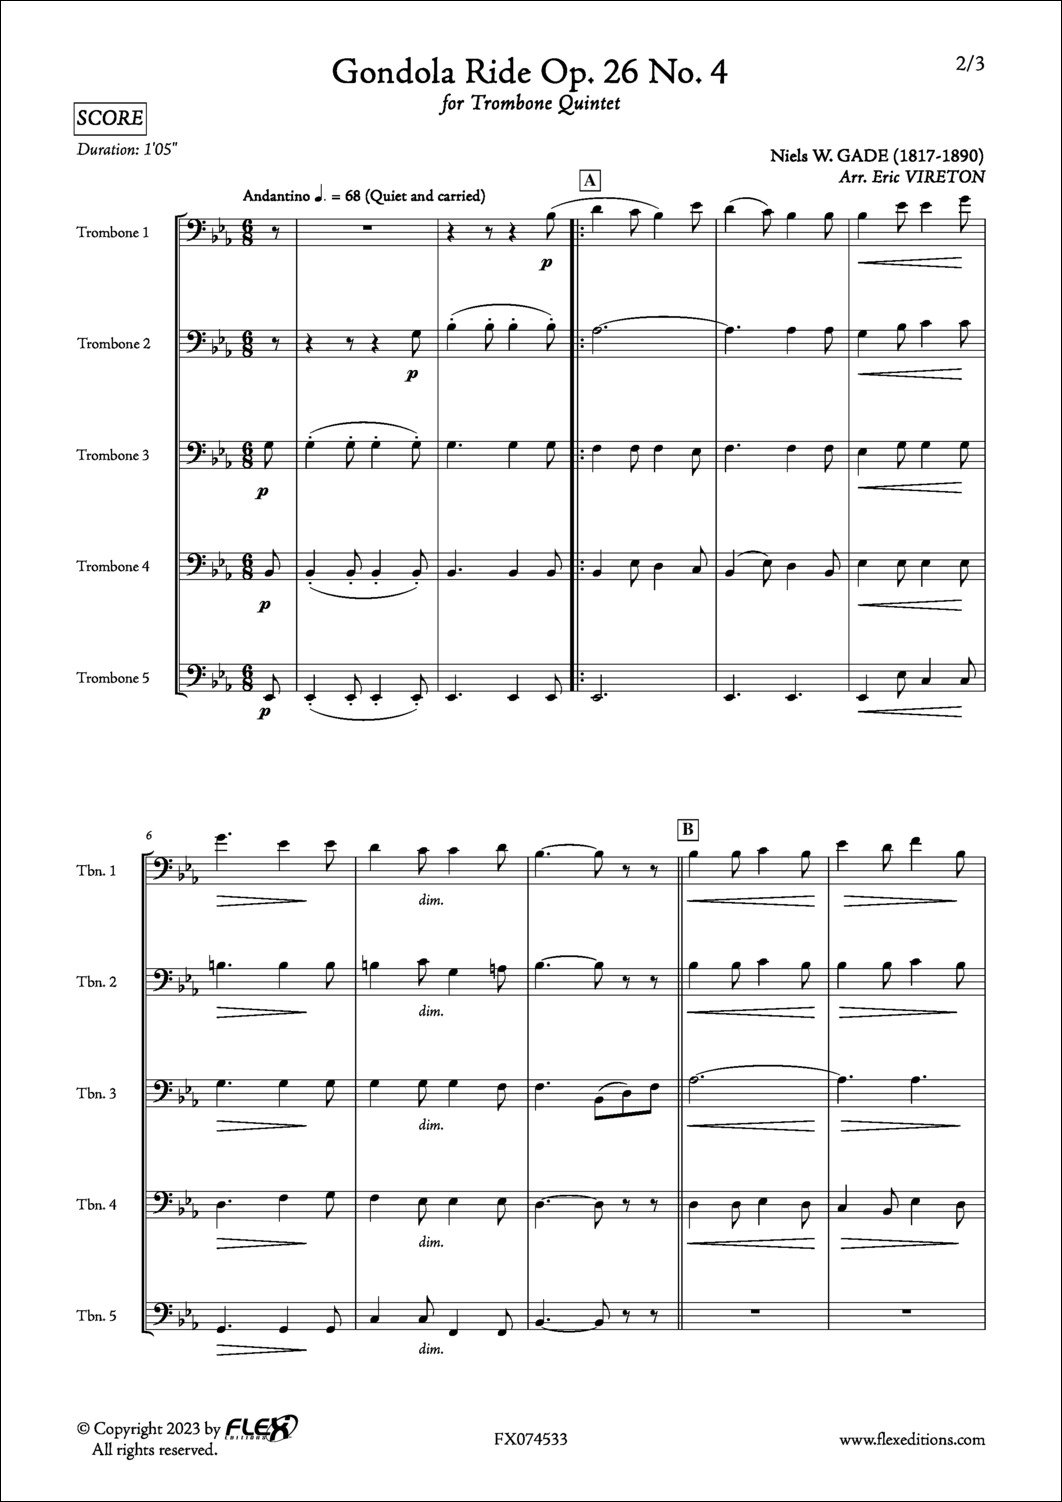 Promenade en Gondole Op. 26 No. 4 - N. GADE - <font color=#666666>Quintette de Trombones</font>